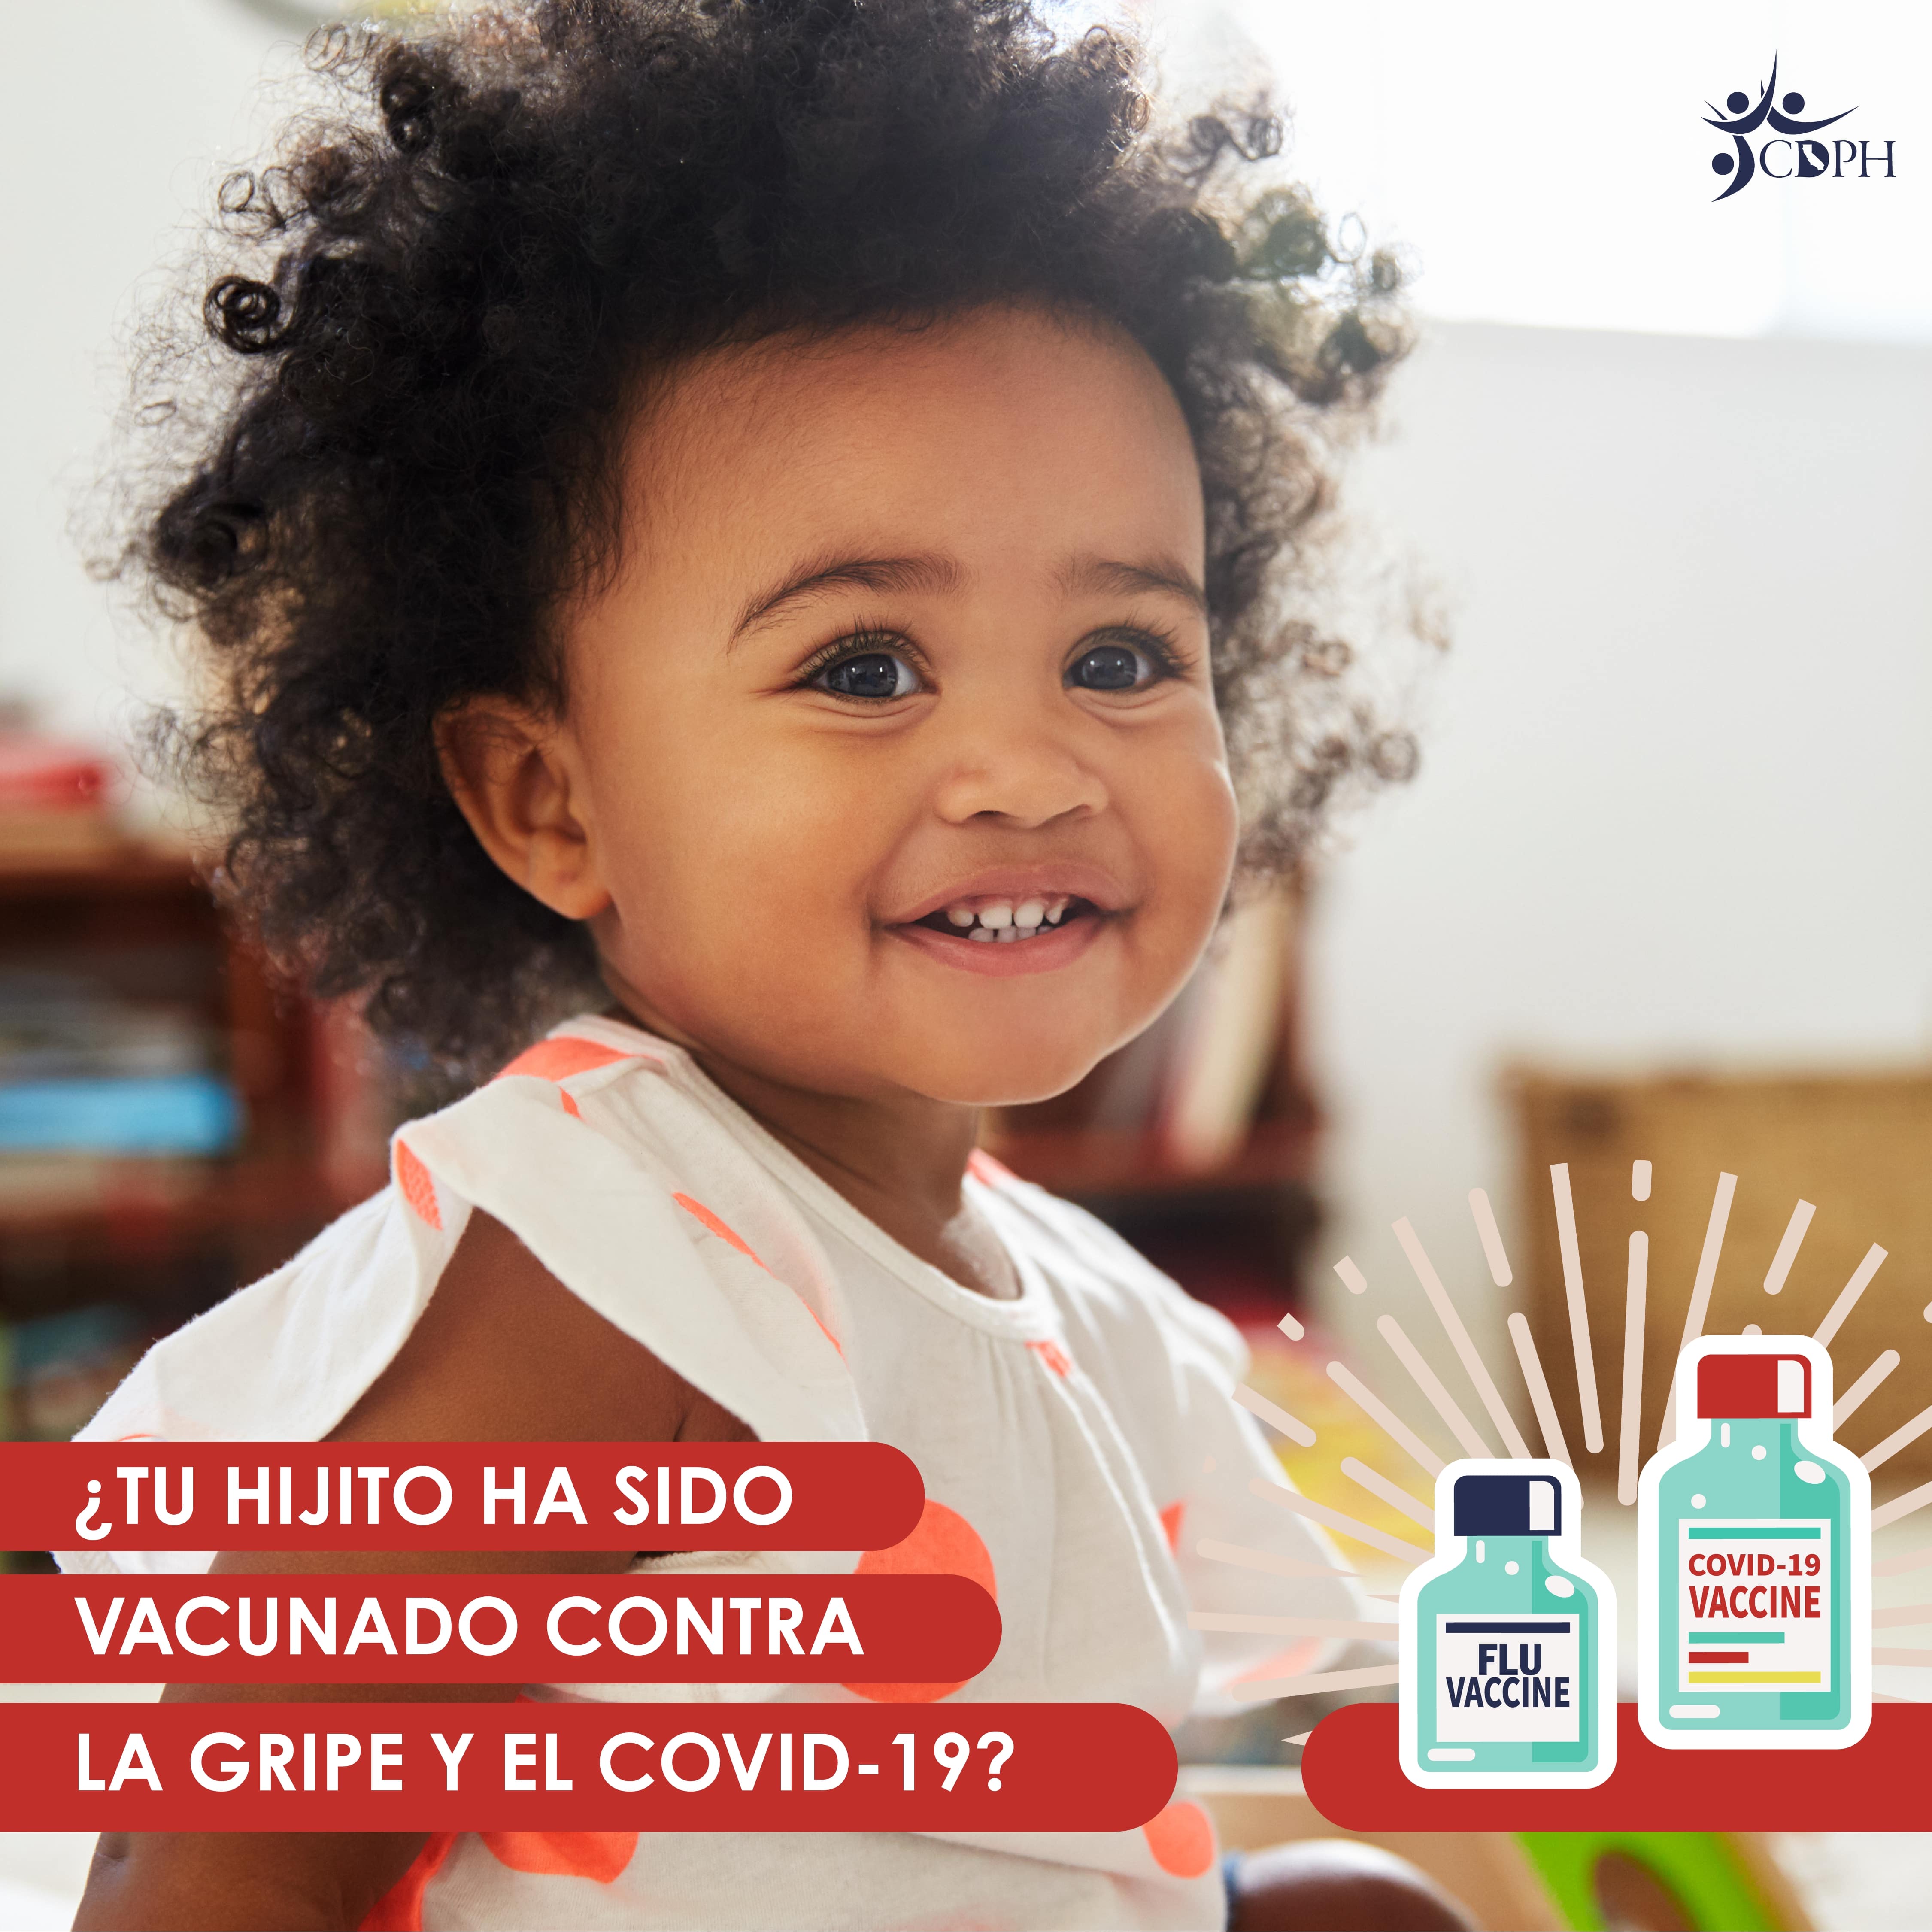 ¿Tu hijito ha sido vacunado contra la gripe y el COVID-19?